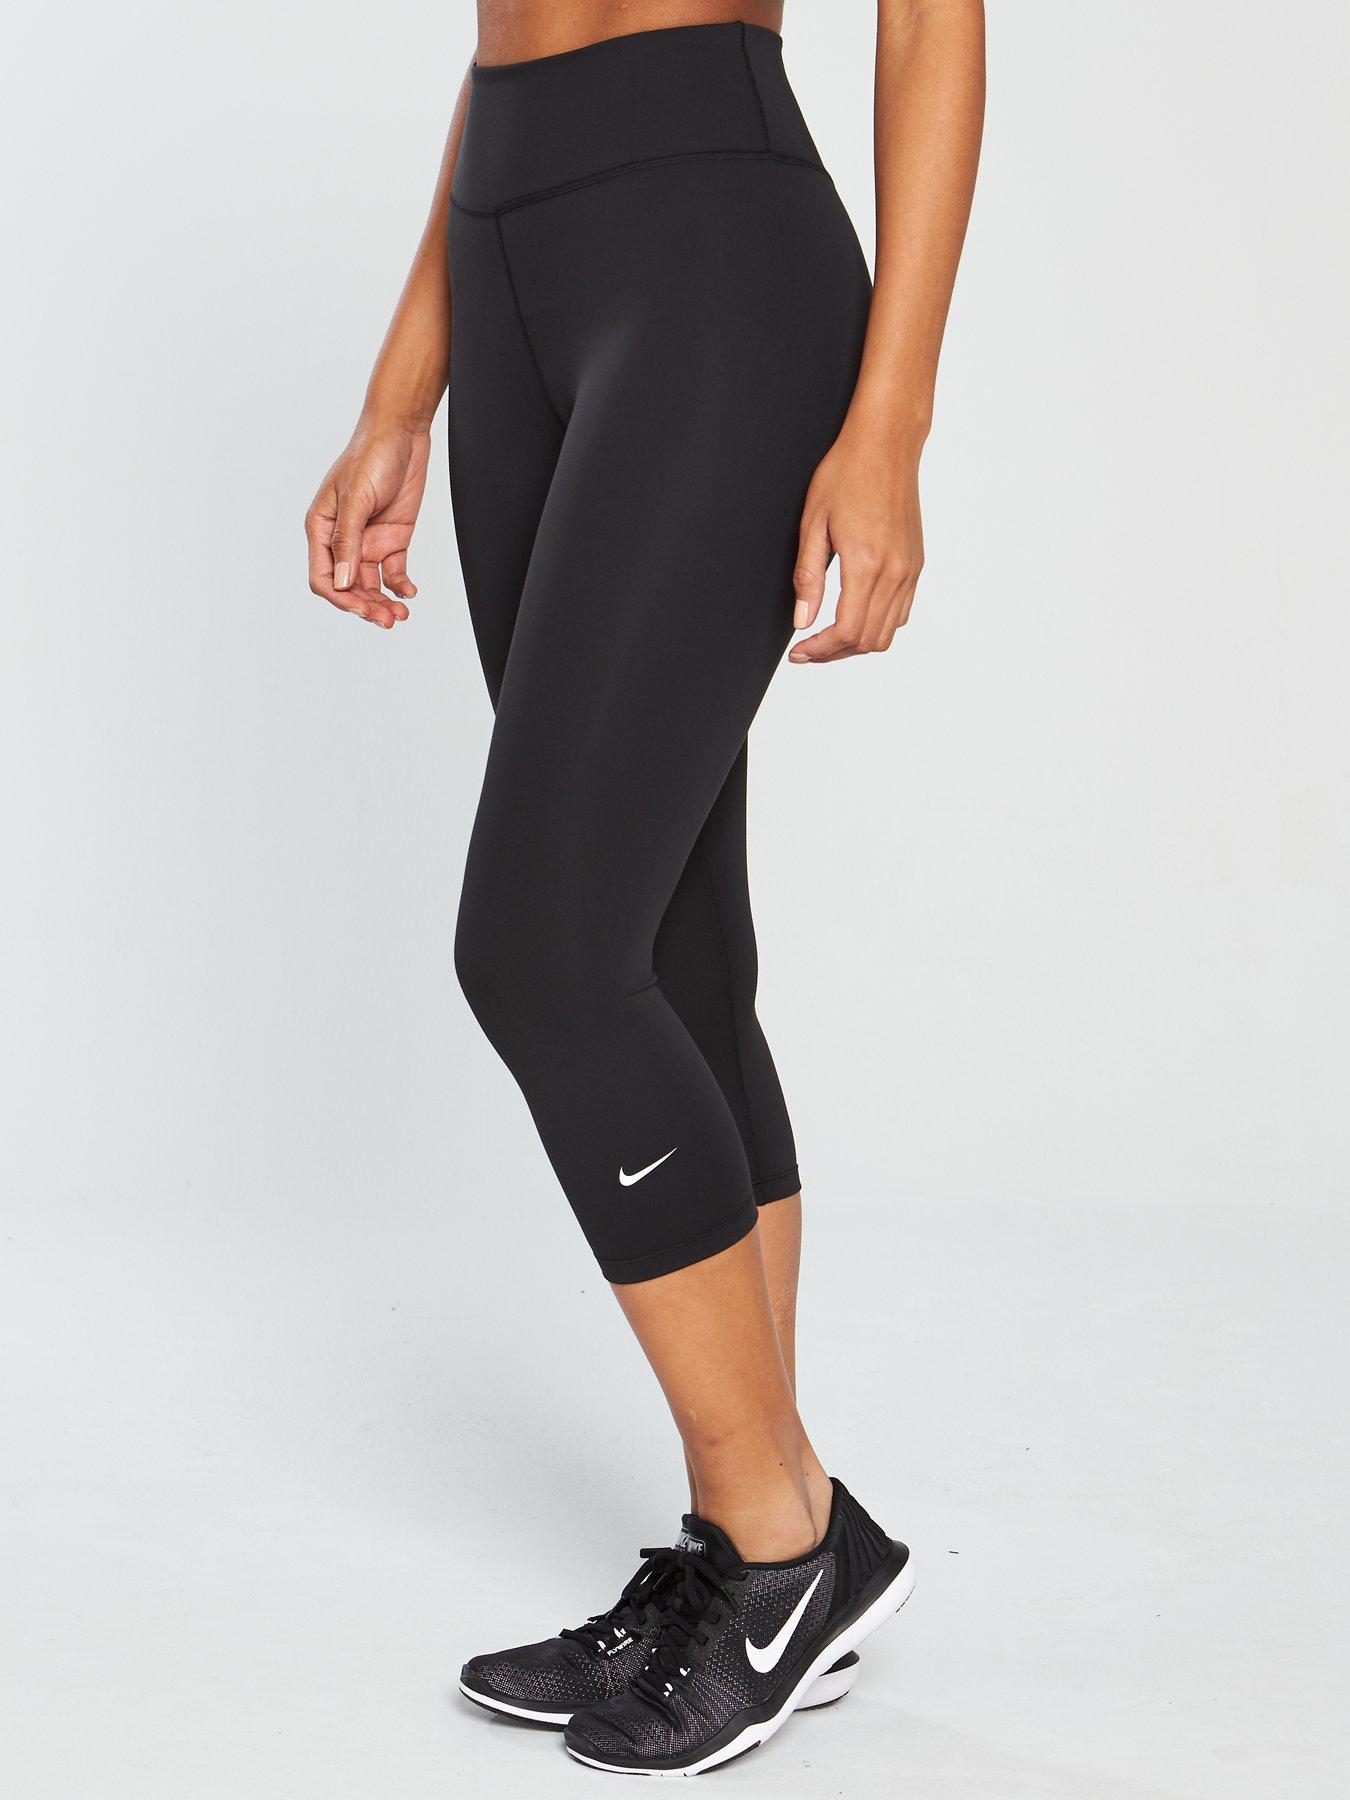 Nike The One Capri Legging - Black | littlewoods.com